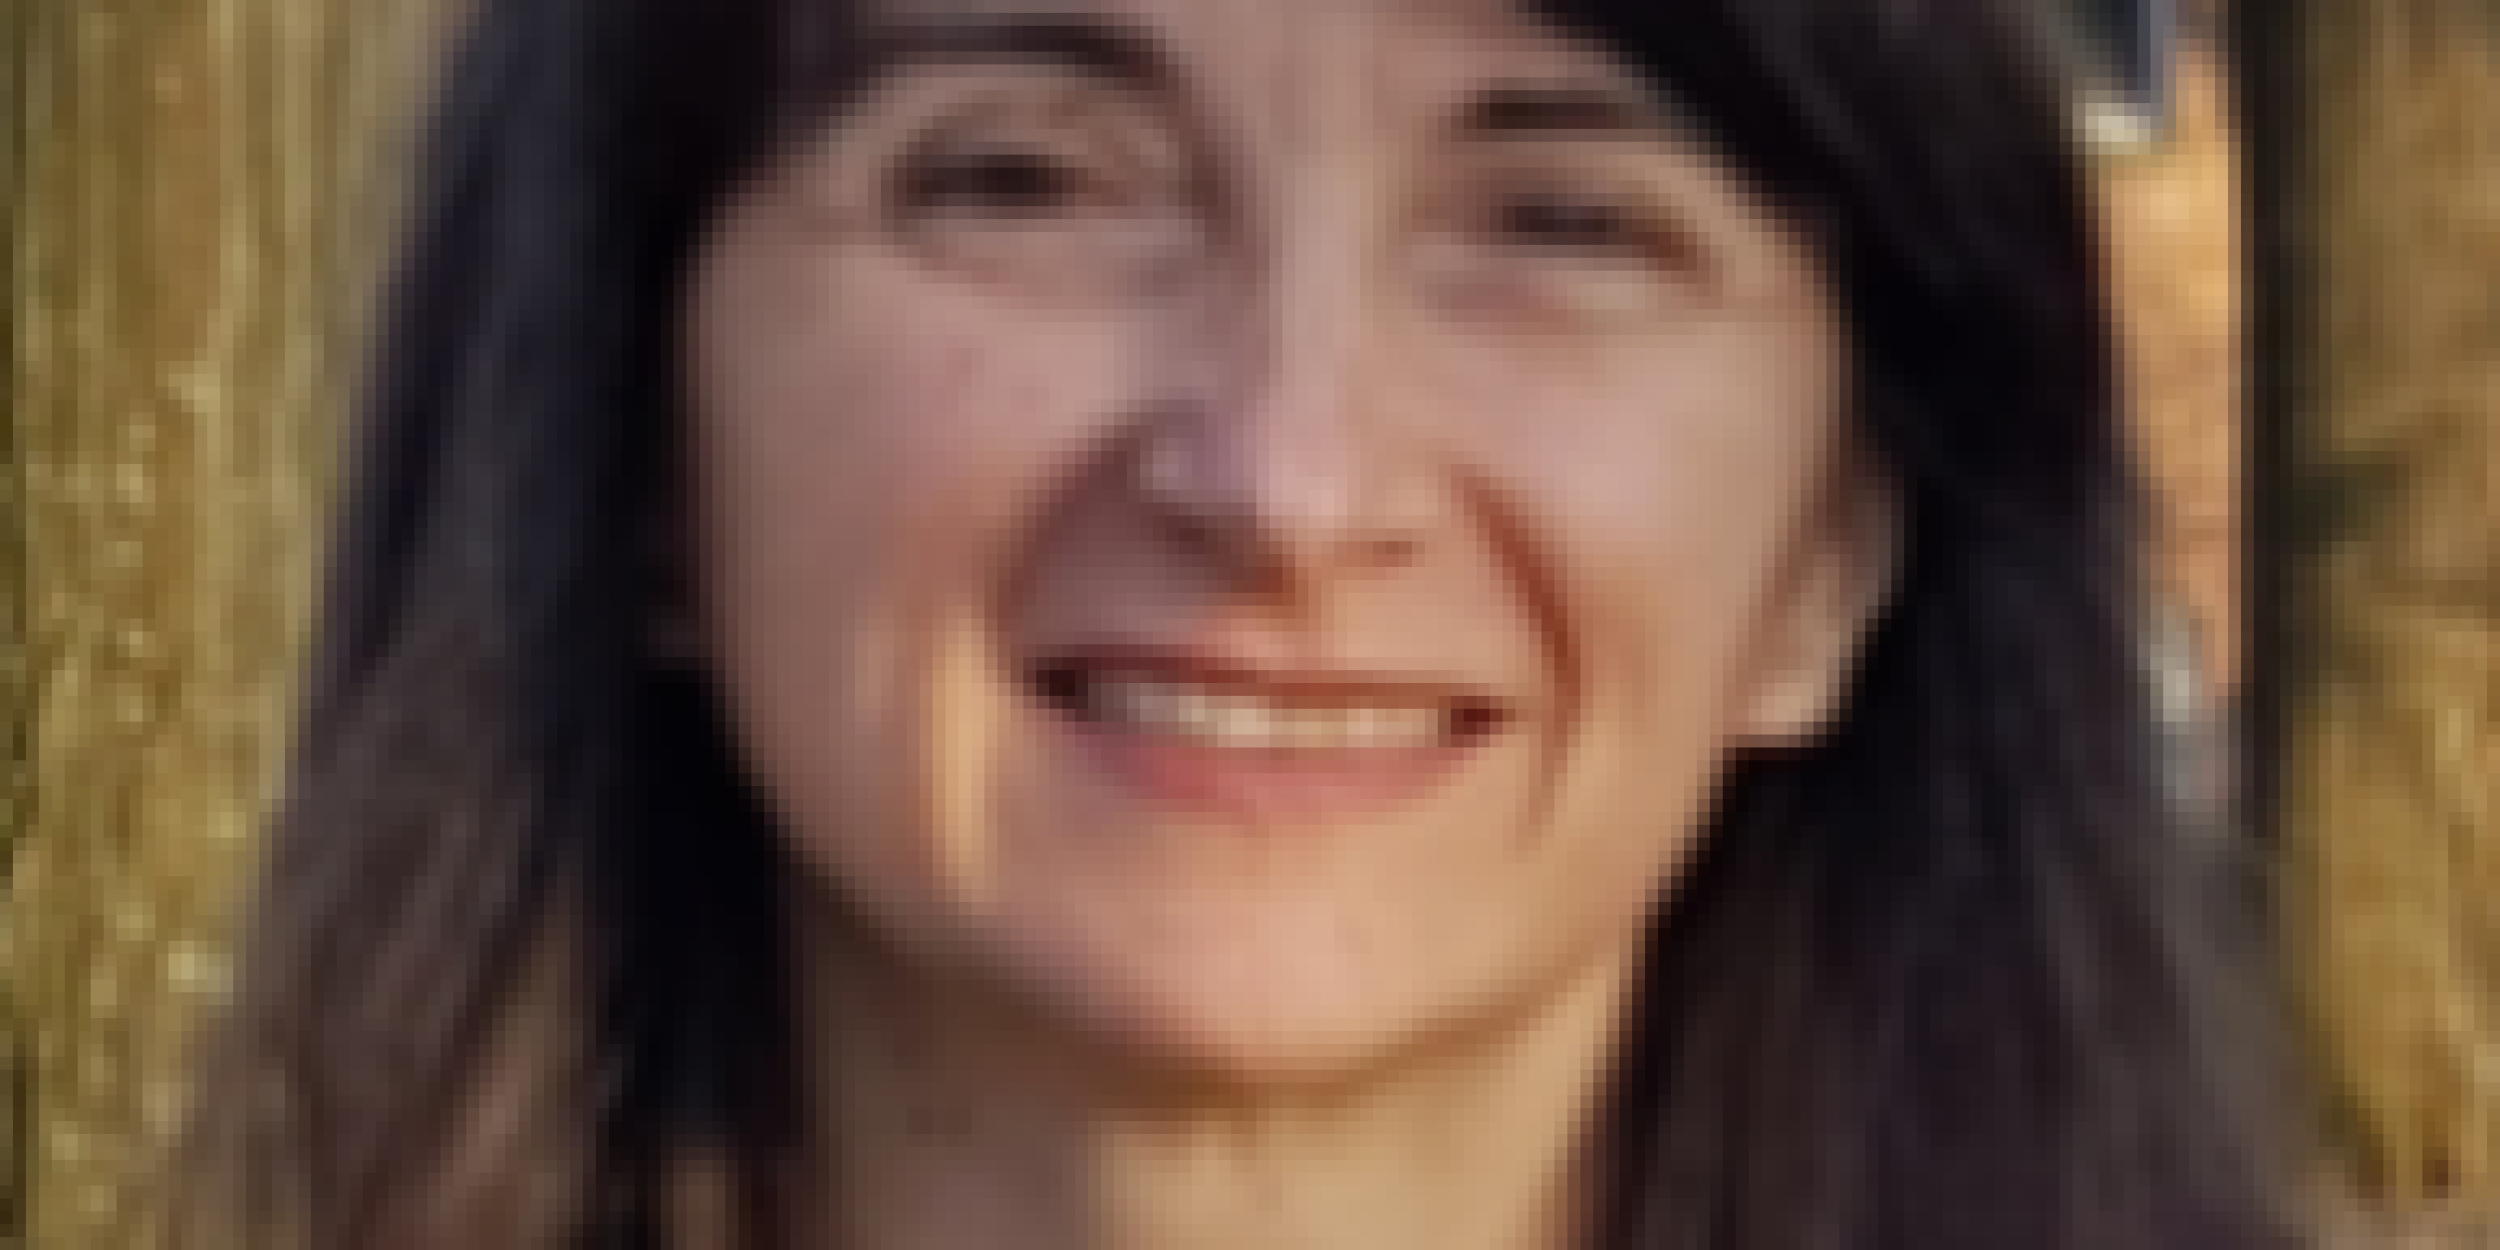 Dr. Annarita Mariotti, Senior Advisor and Scientist